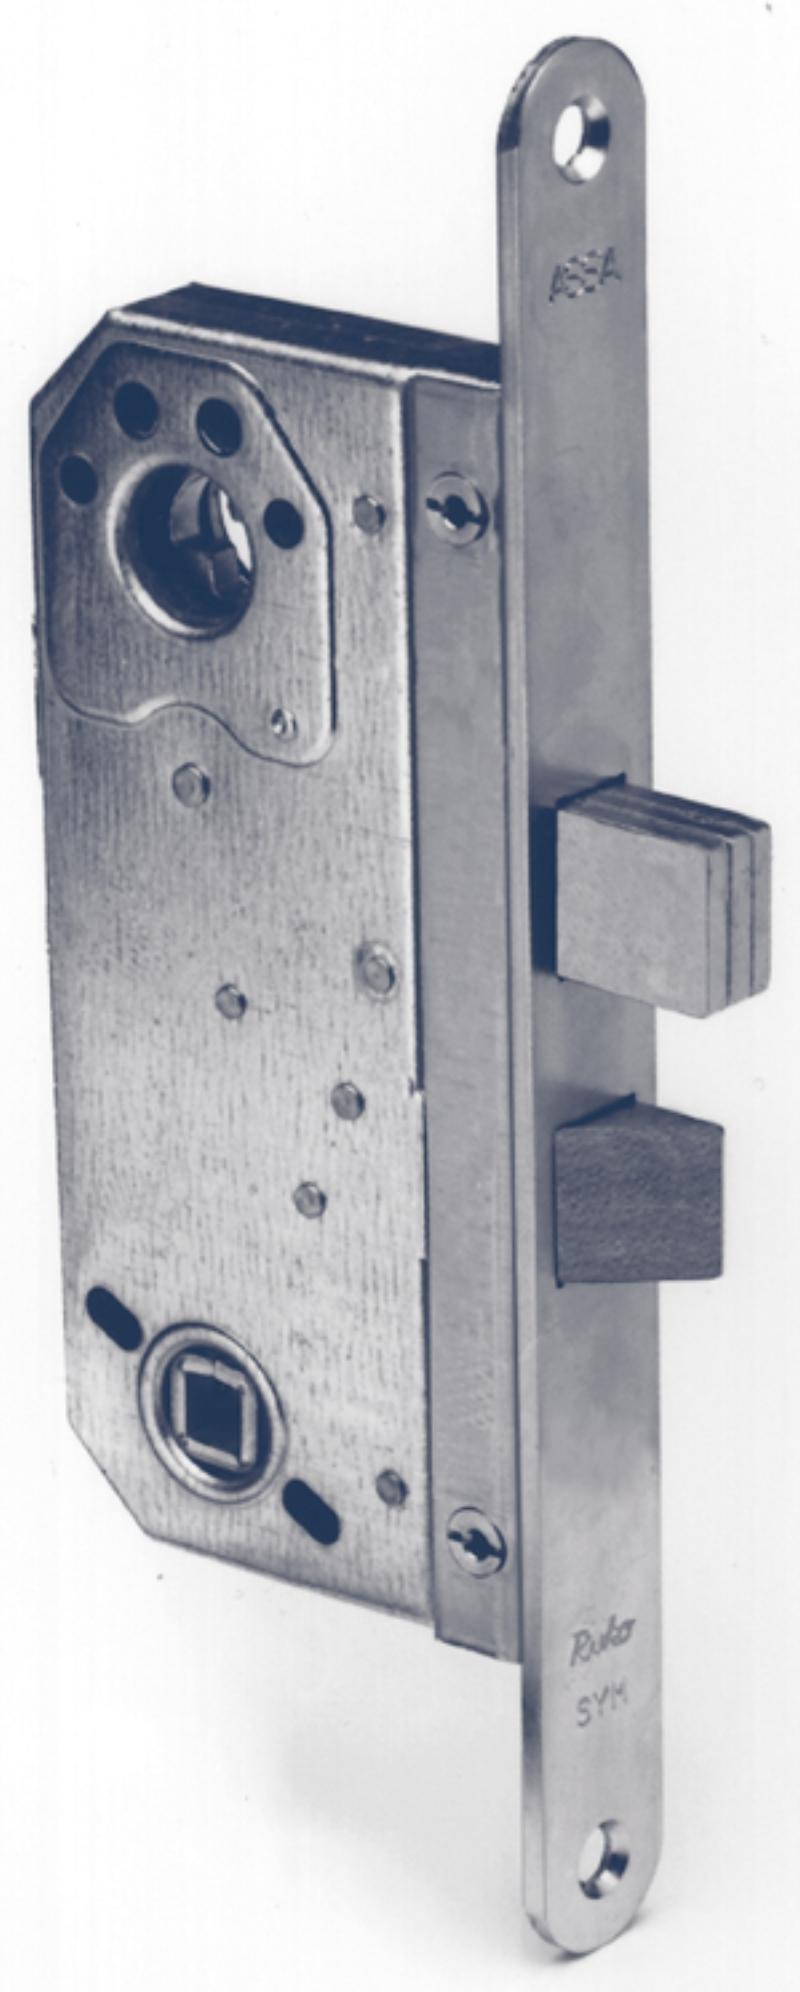 Assa lock box 565 m/25mm square post